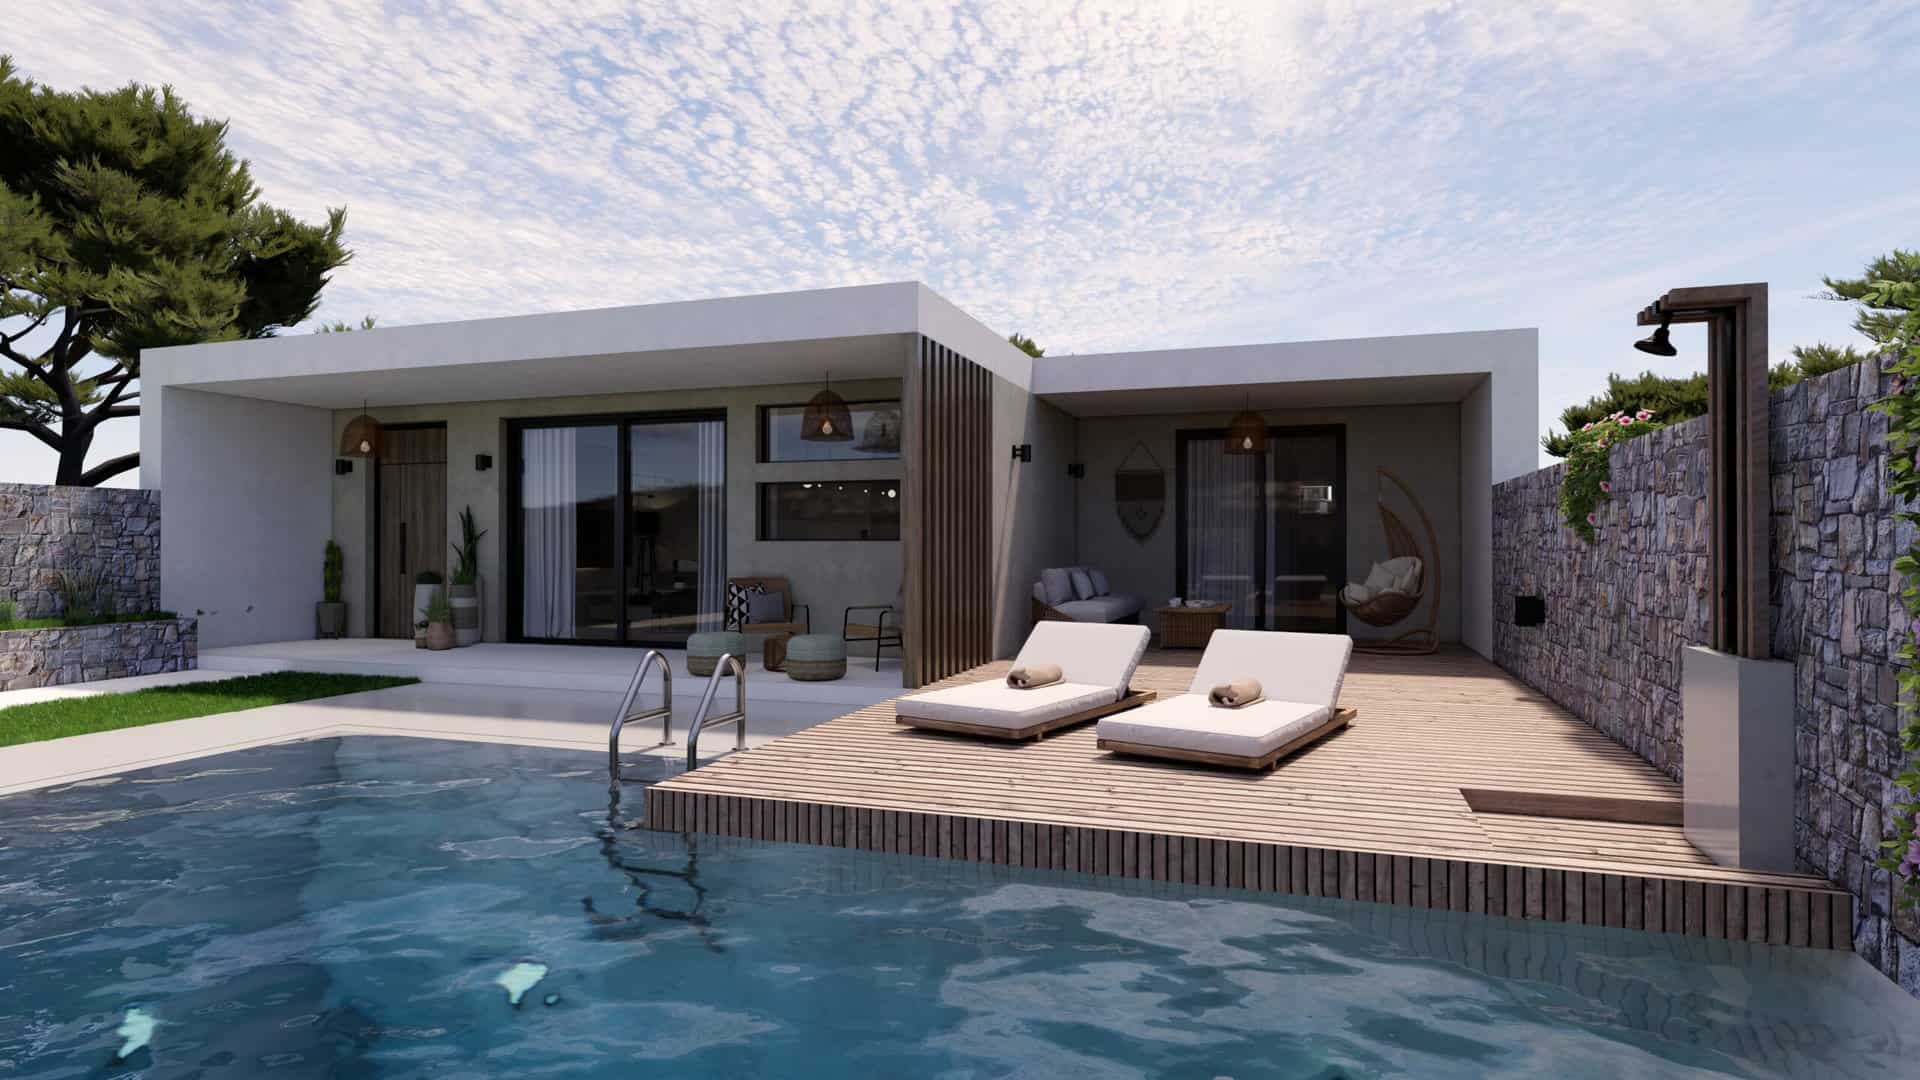 Αρχιτεκτονικός σχεδιασμός εξοχικής κατοικίας με πισίνα - 3D φωτορεαλιστική απεικόνιση